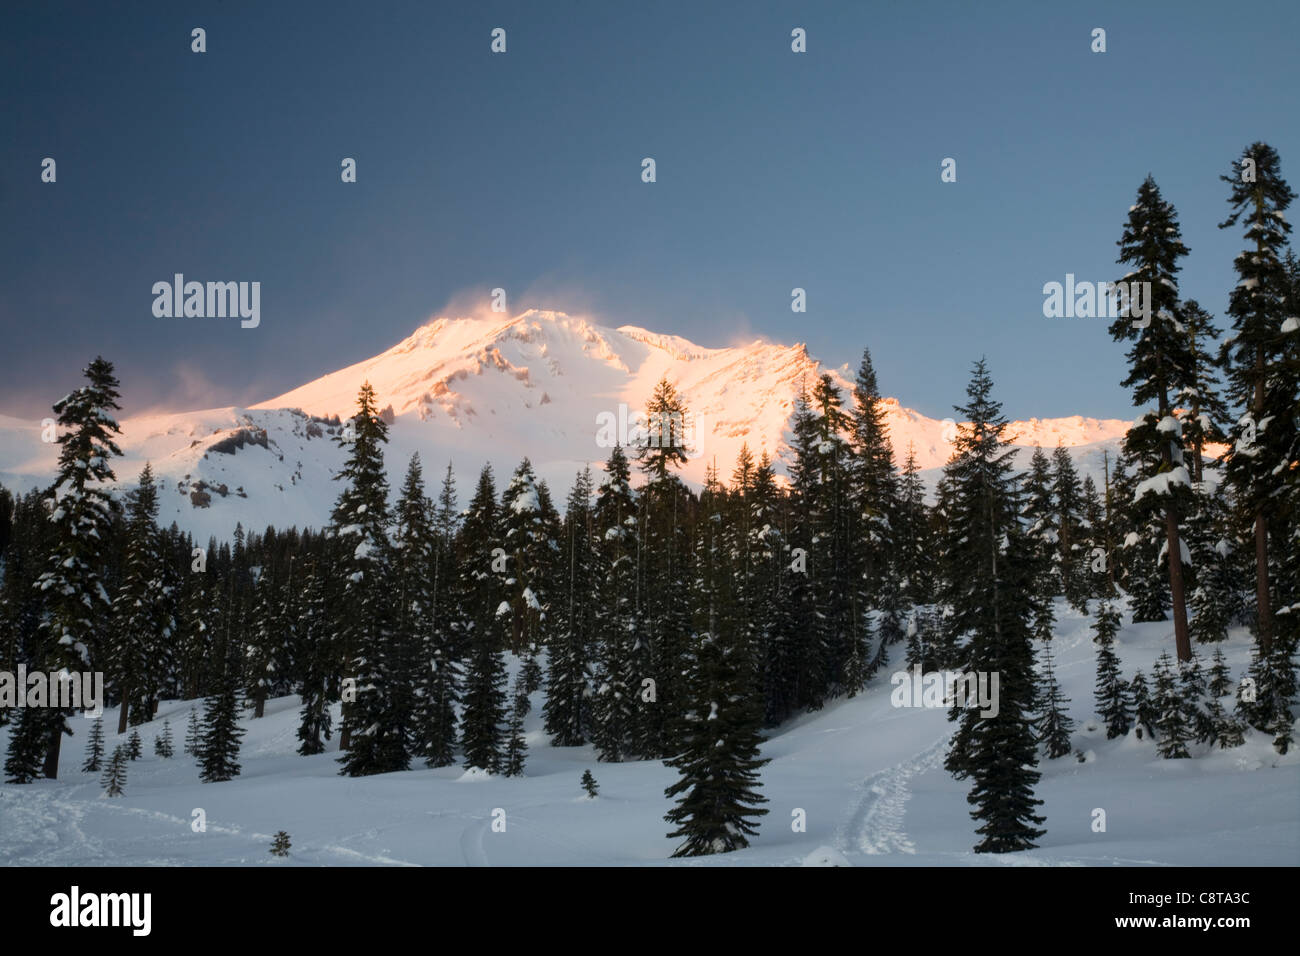 Kalifornien - Alpin Glühen am Mount Shasta aus dem Bunny Wohnungen Cross Country Ski-Gebiet in der Shasta-Dreiheit National Forest. Stockfoto